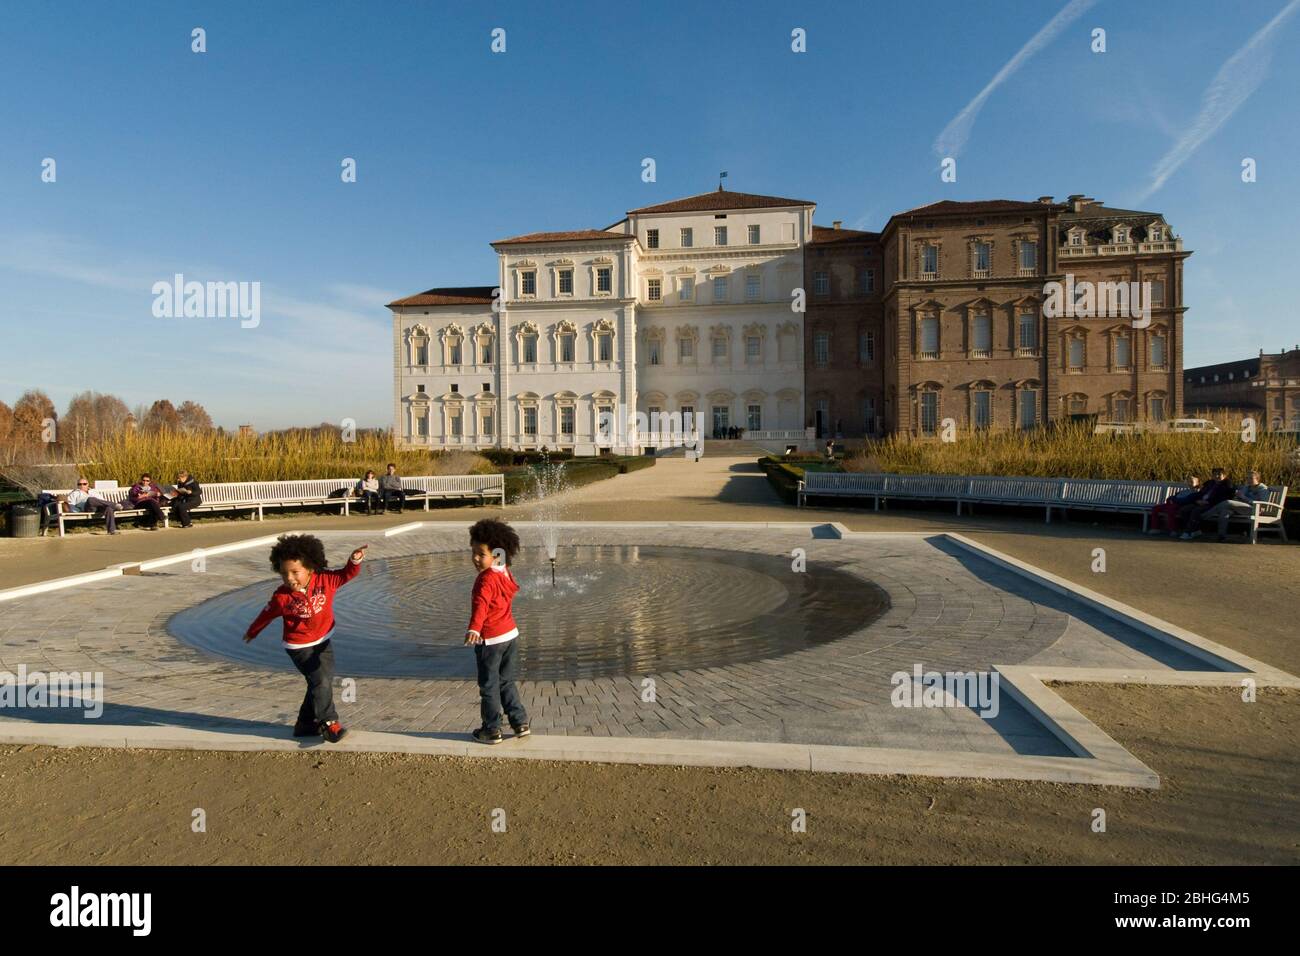 VENARIA, ITALIA - Dicembre 2011: I giardini del palazzo reale di Venaria Foto Stock